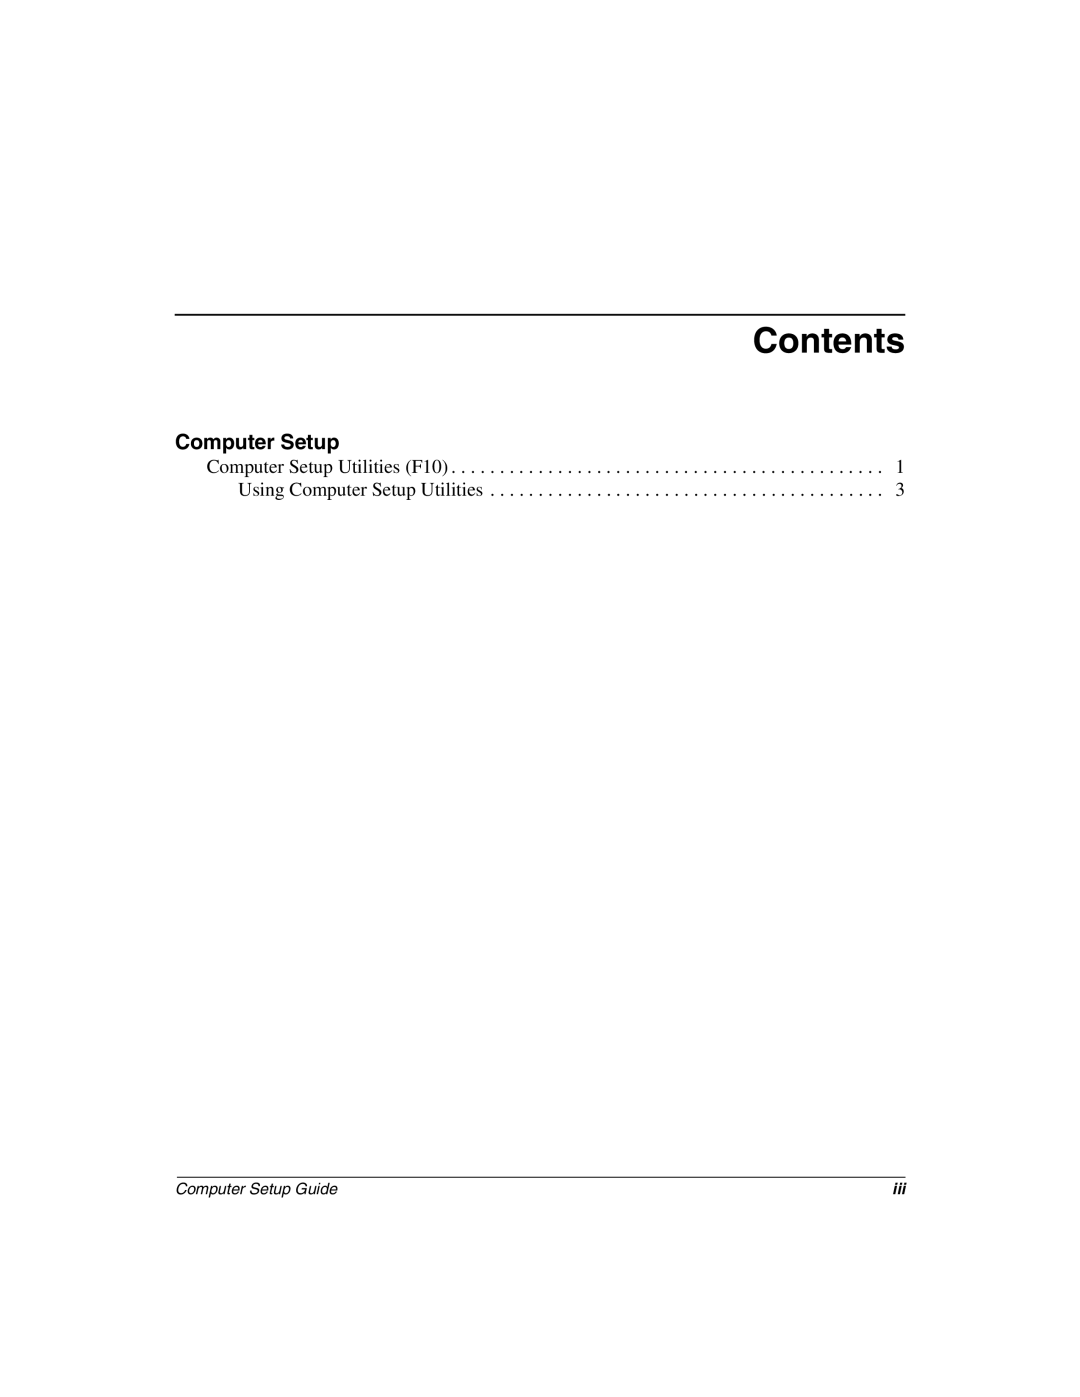 HP D300 manual Contents 